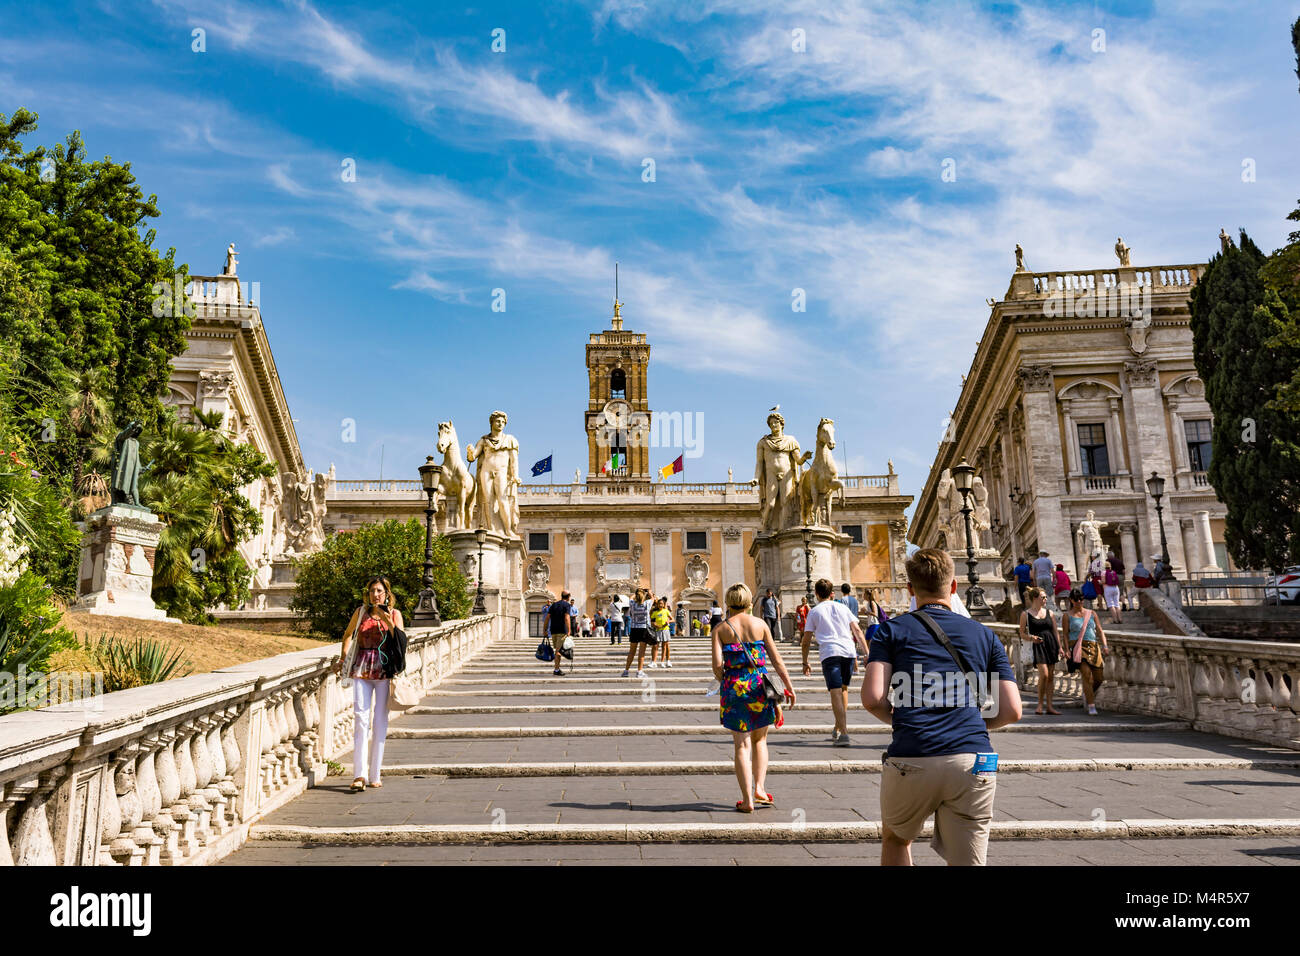 Rom, Italien, 31. AUGUST 2017: Touristen auf Michelangelo Treppen zu Piazza del Campidoglio auf dem Kapitol und dem Palazzo Senatorenpalast, Rom, Italien. Stockfoto